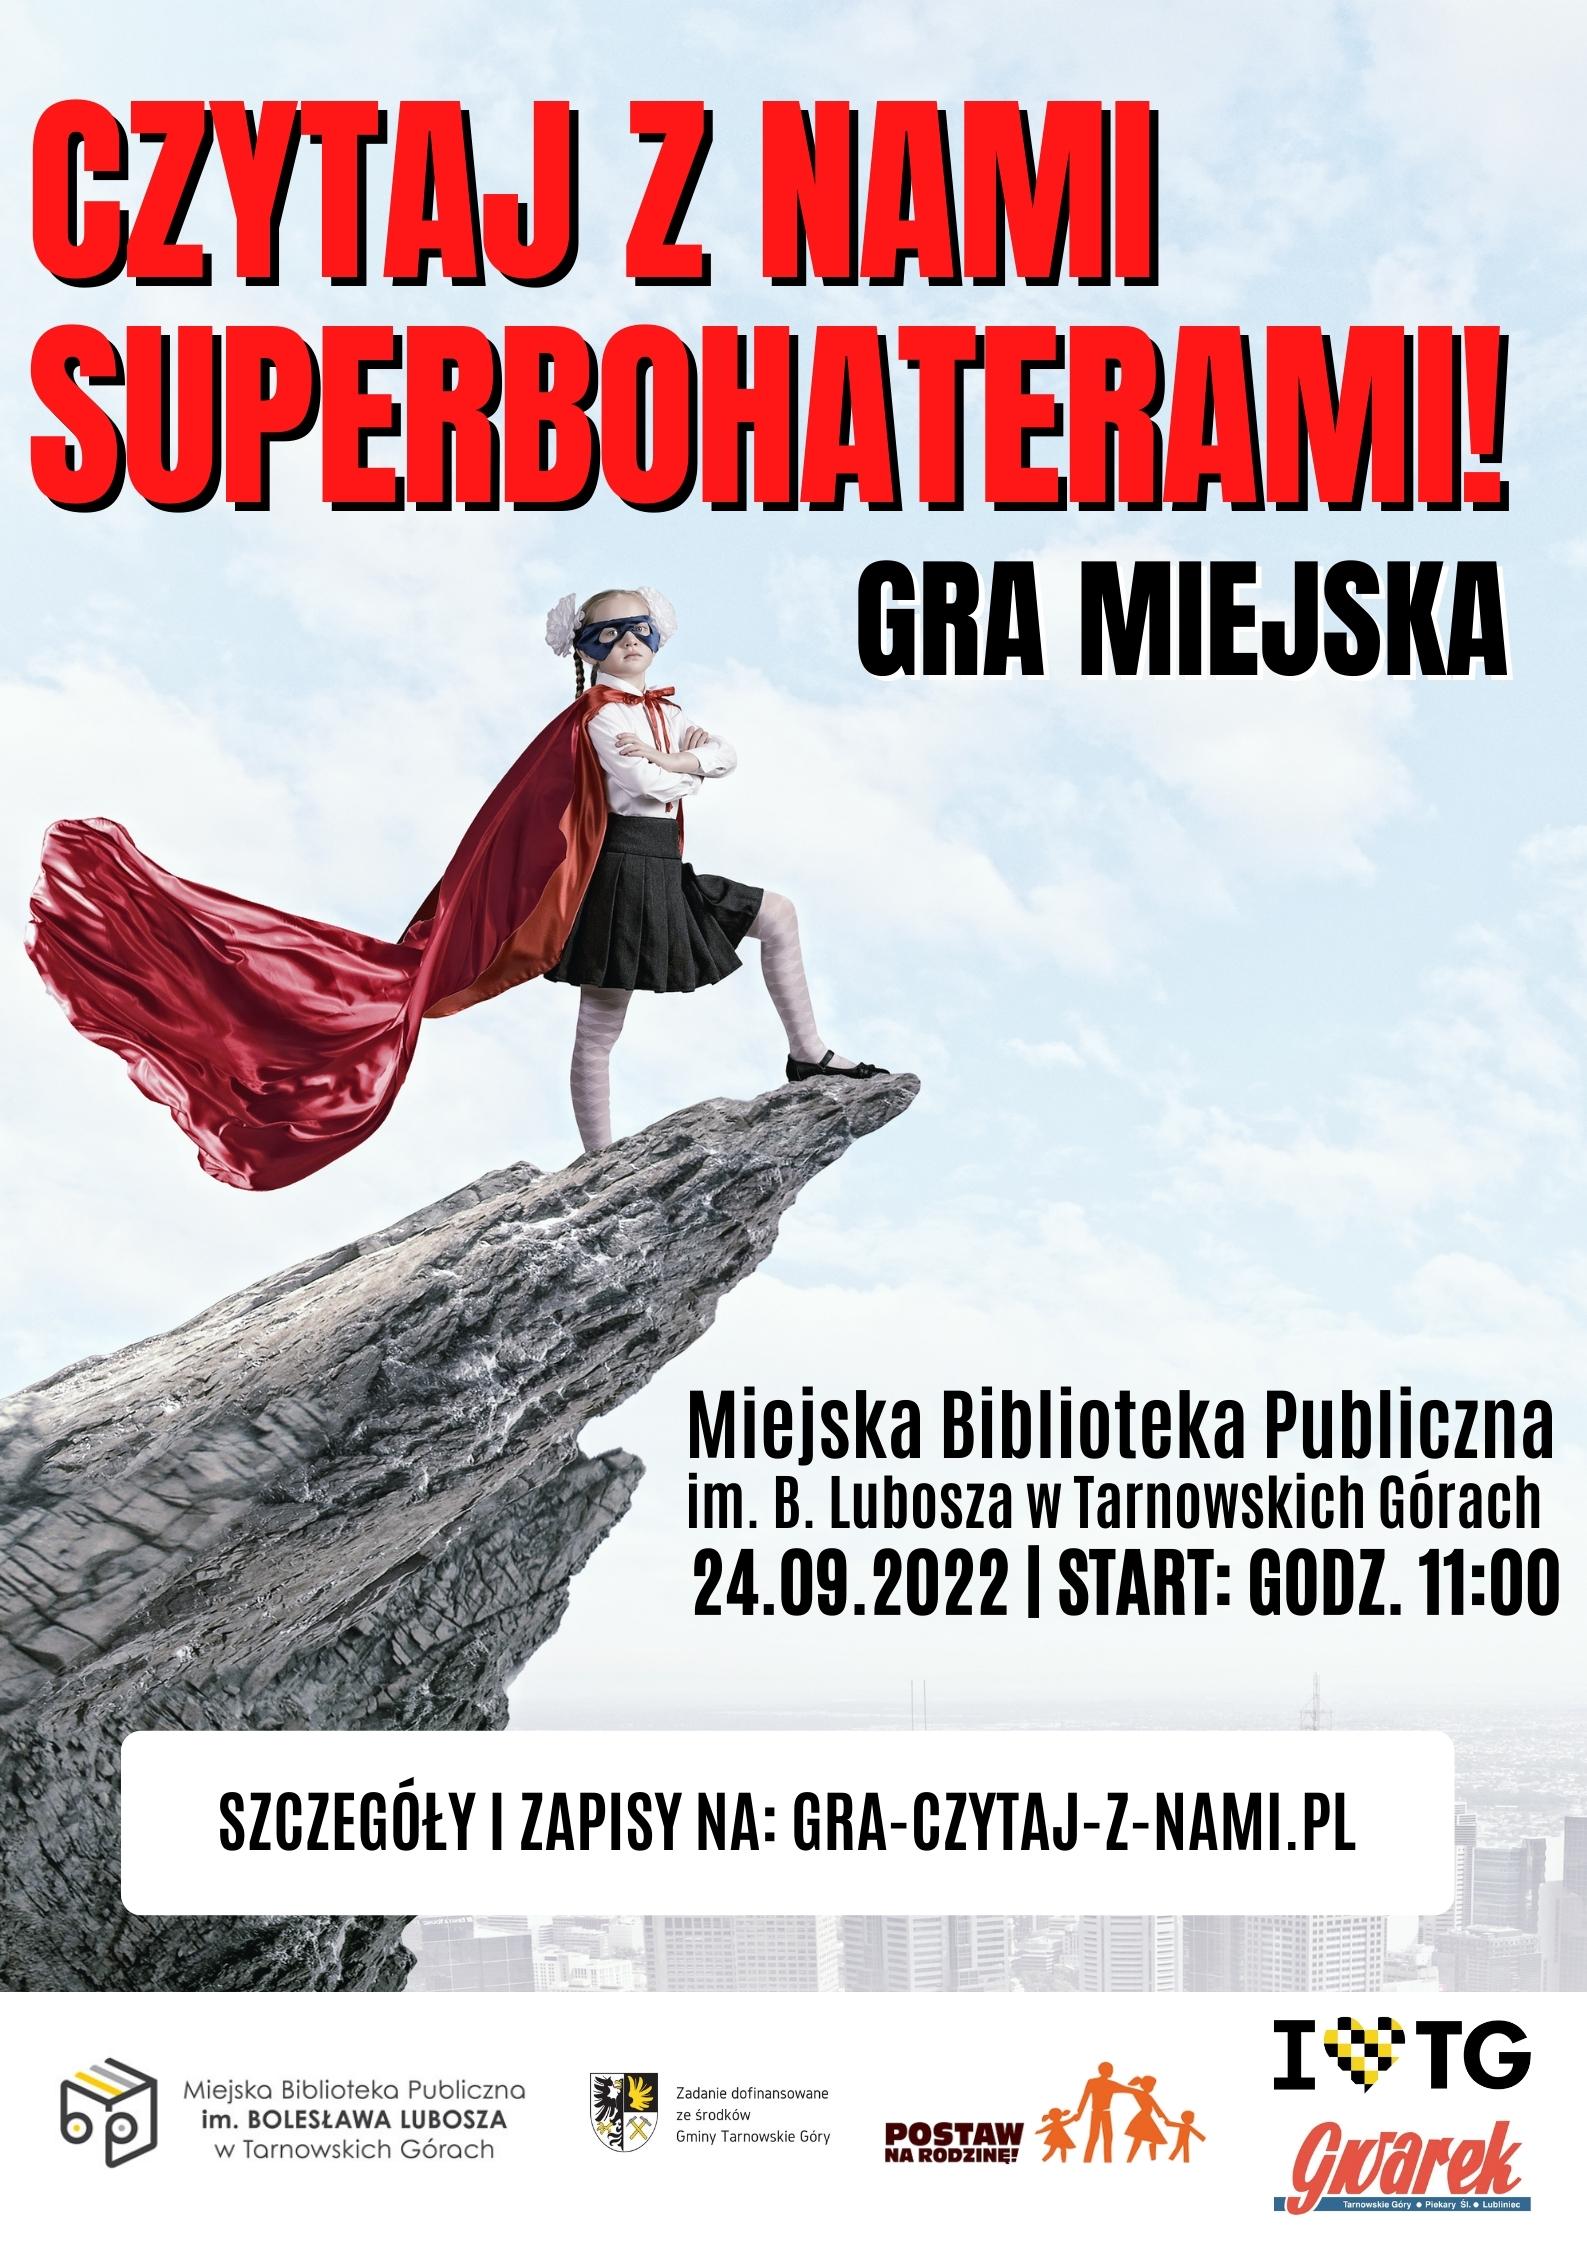 Czytaj z nami Superbohaterami - plakat gry miejskiej